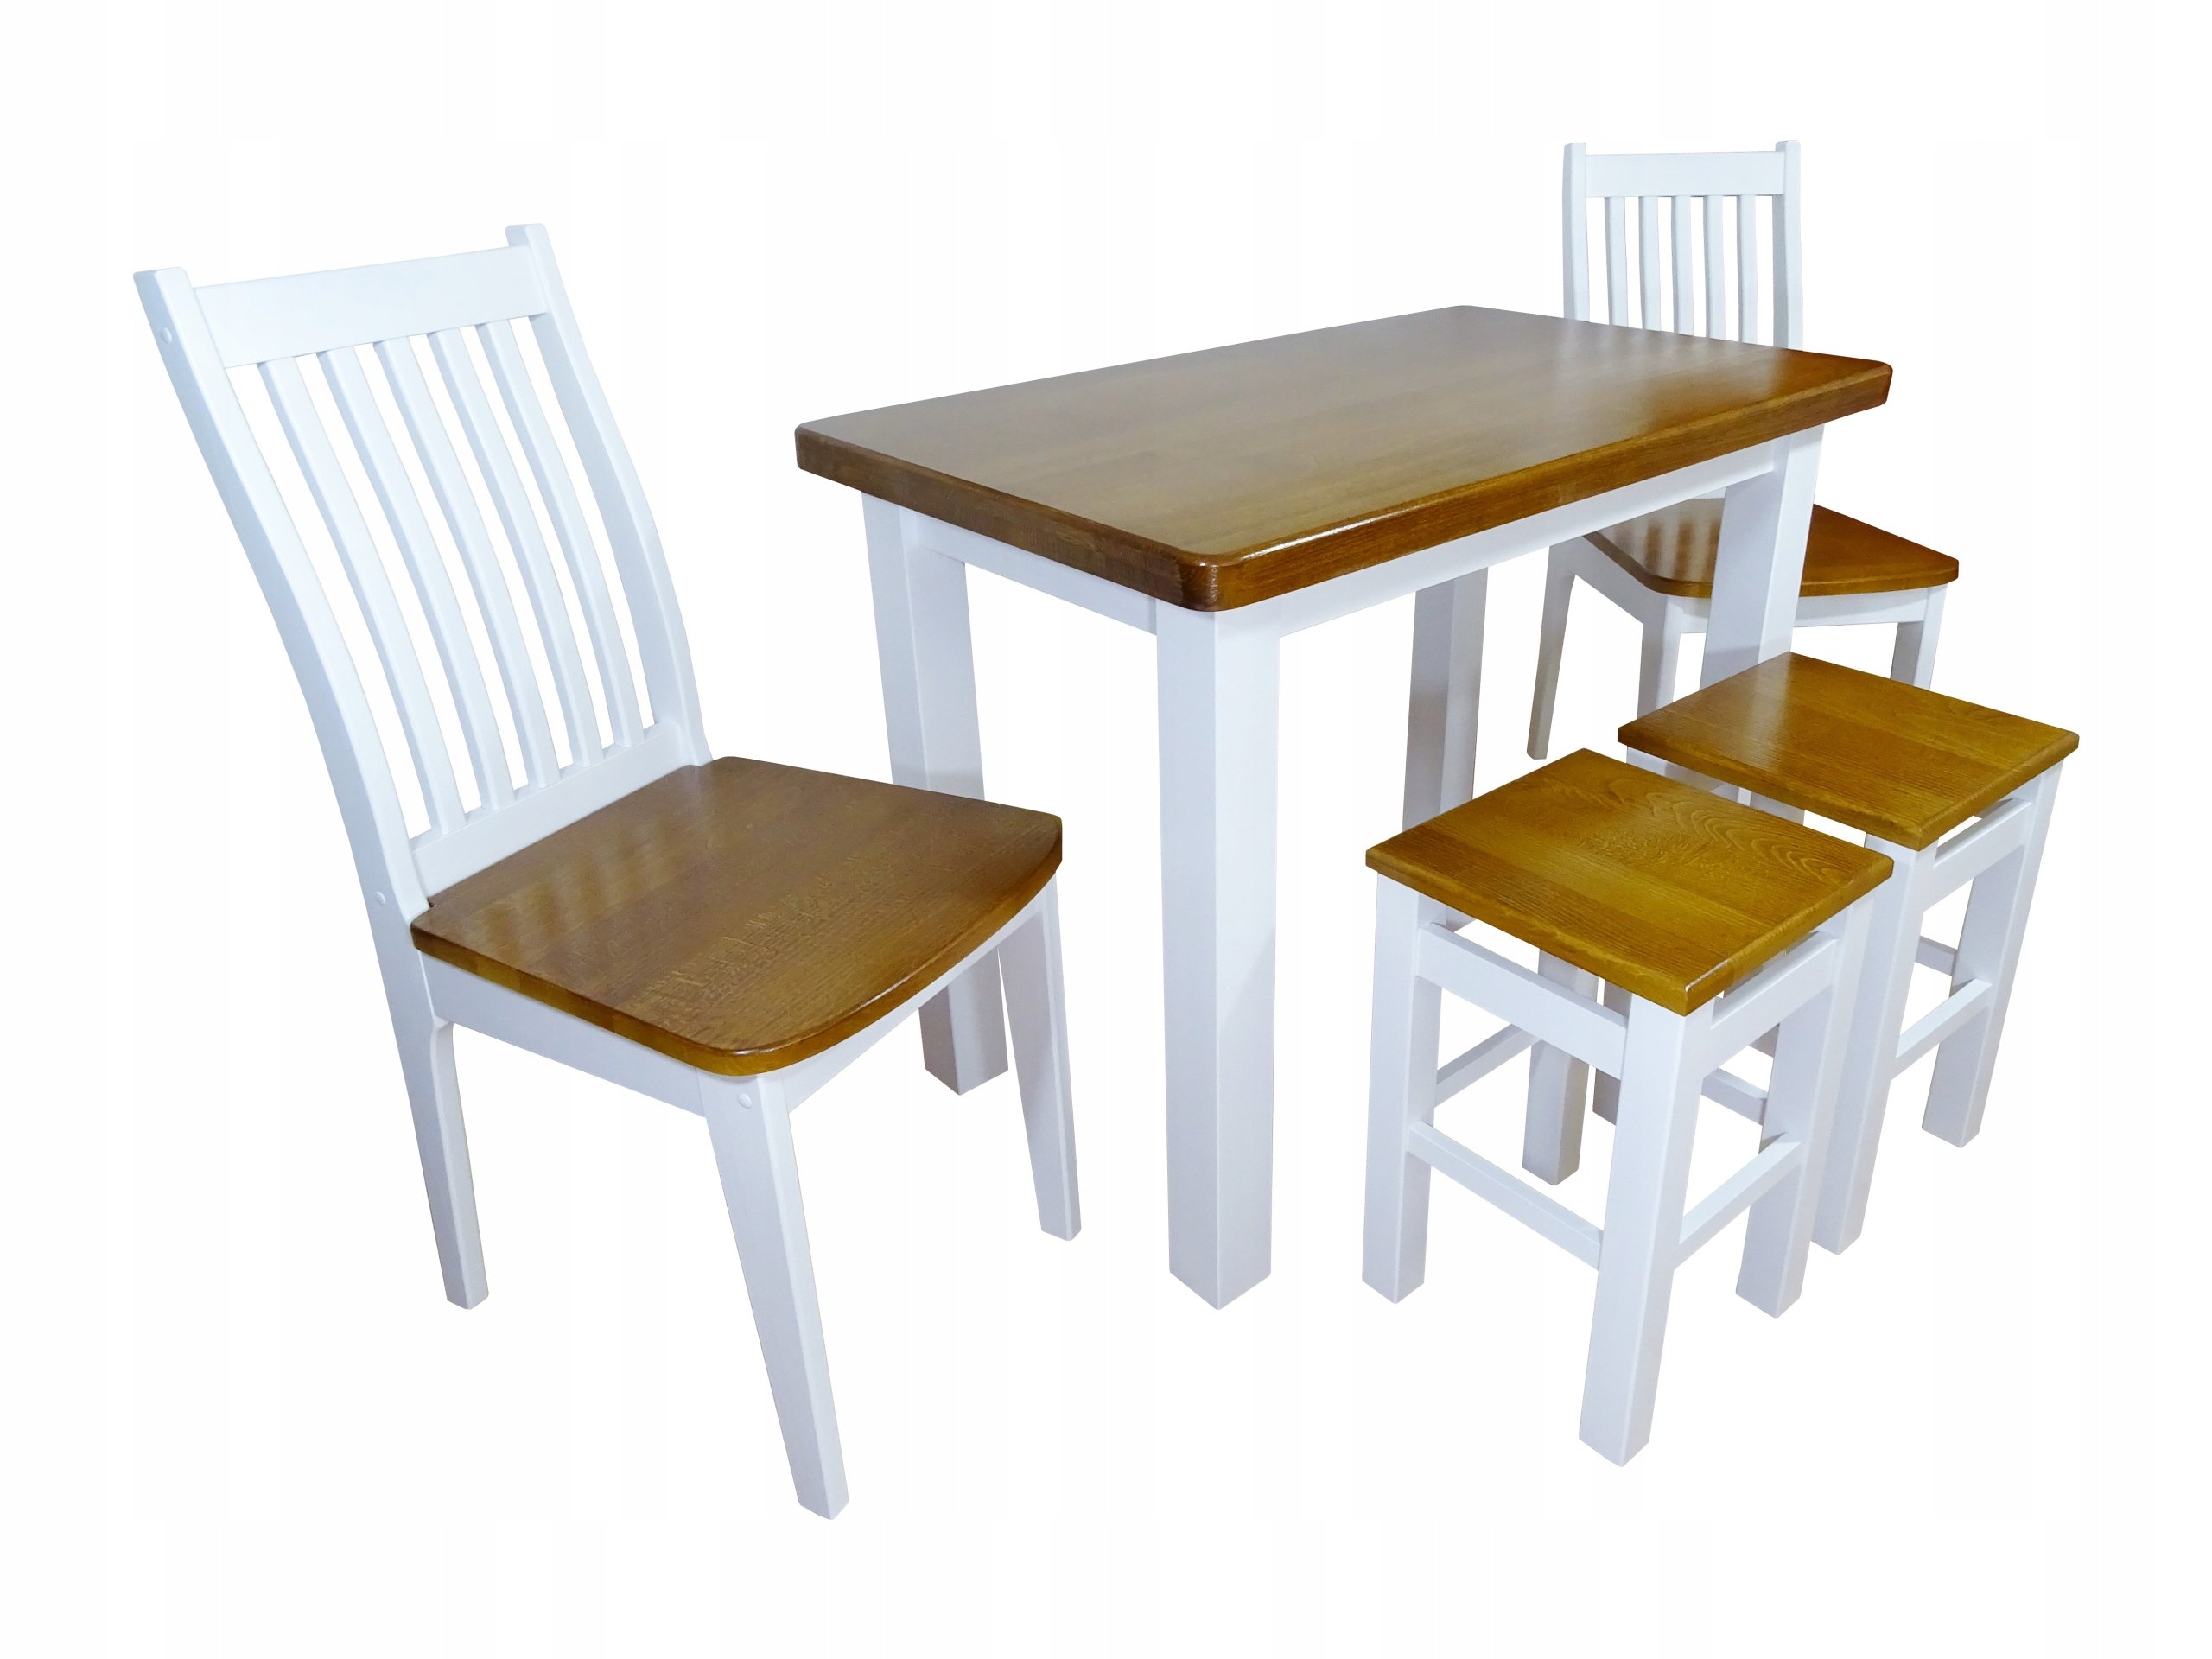 Купить кухонные стулья комплект. Стол с табуретками для кухни. Кухонный стол и стулья комплект. Кухонный набор стол и стулья. Набор обеденный стол со стульями.